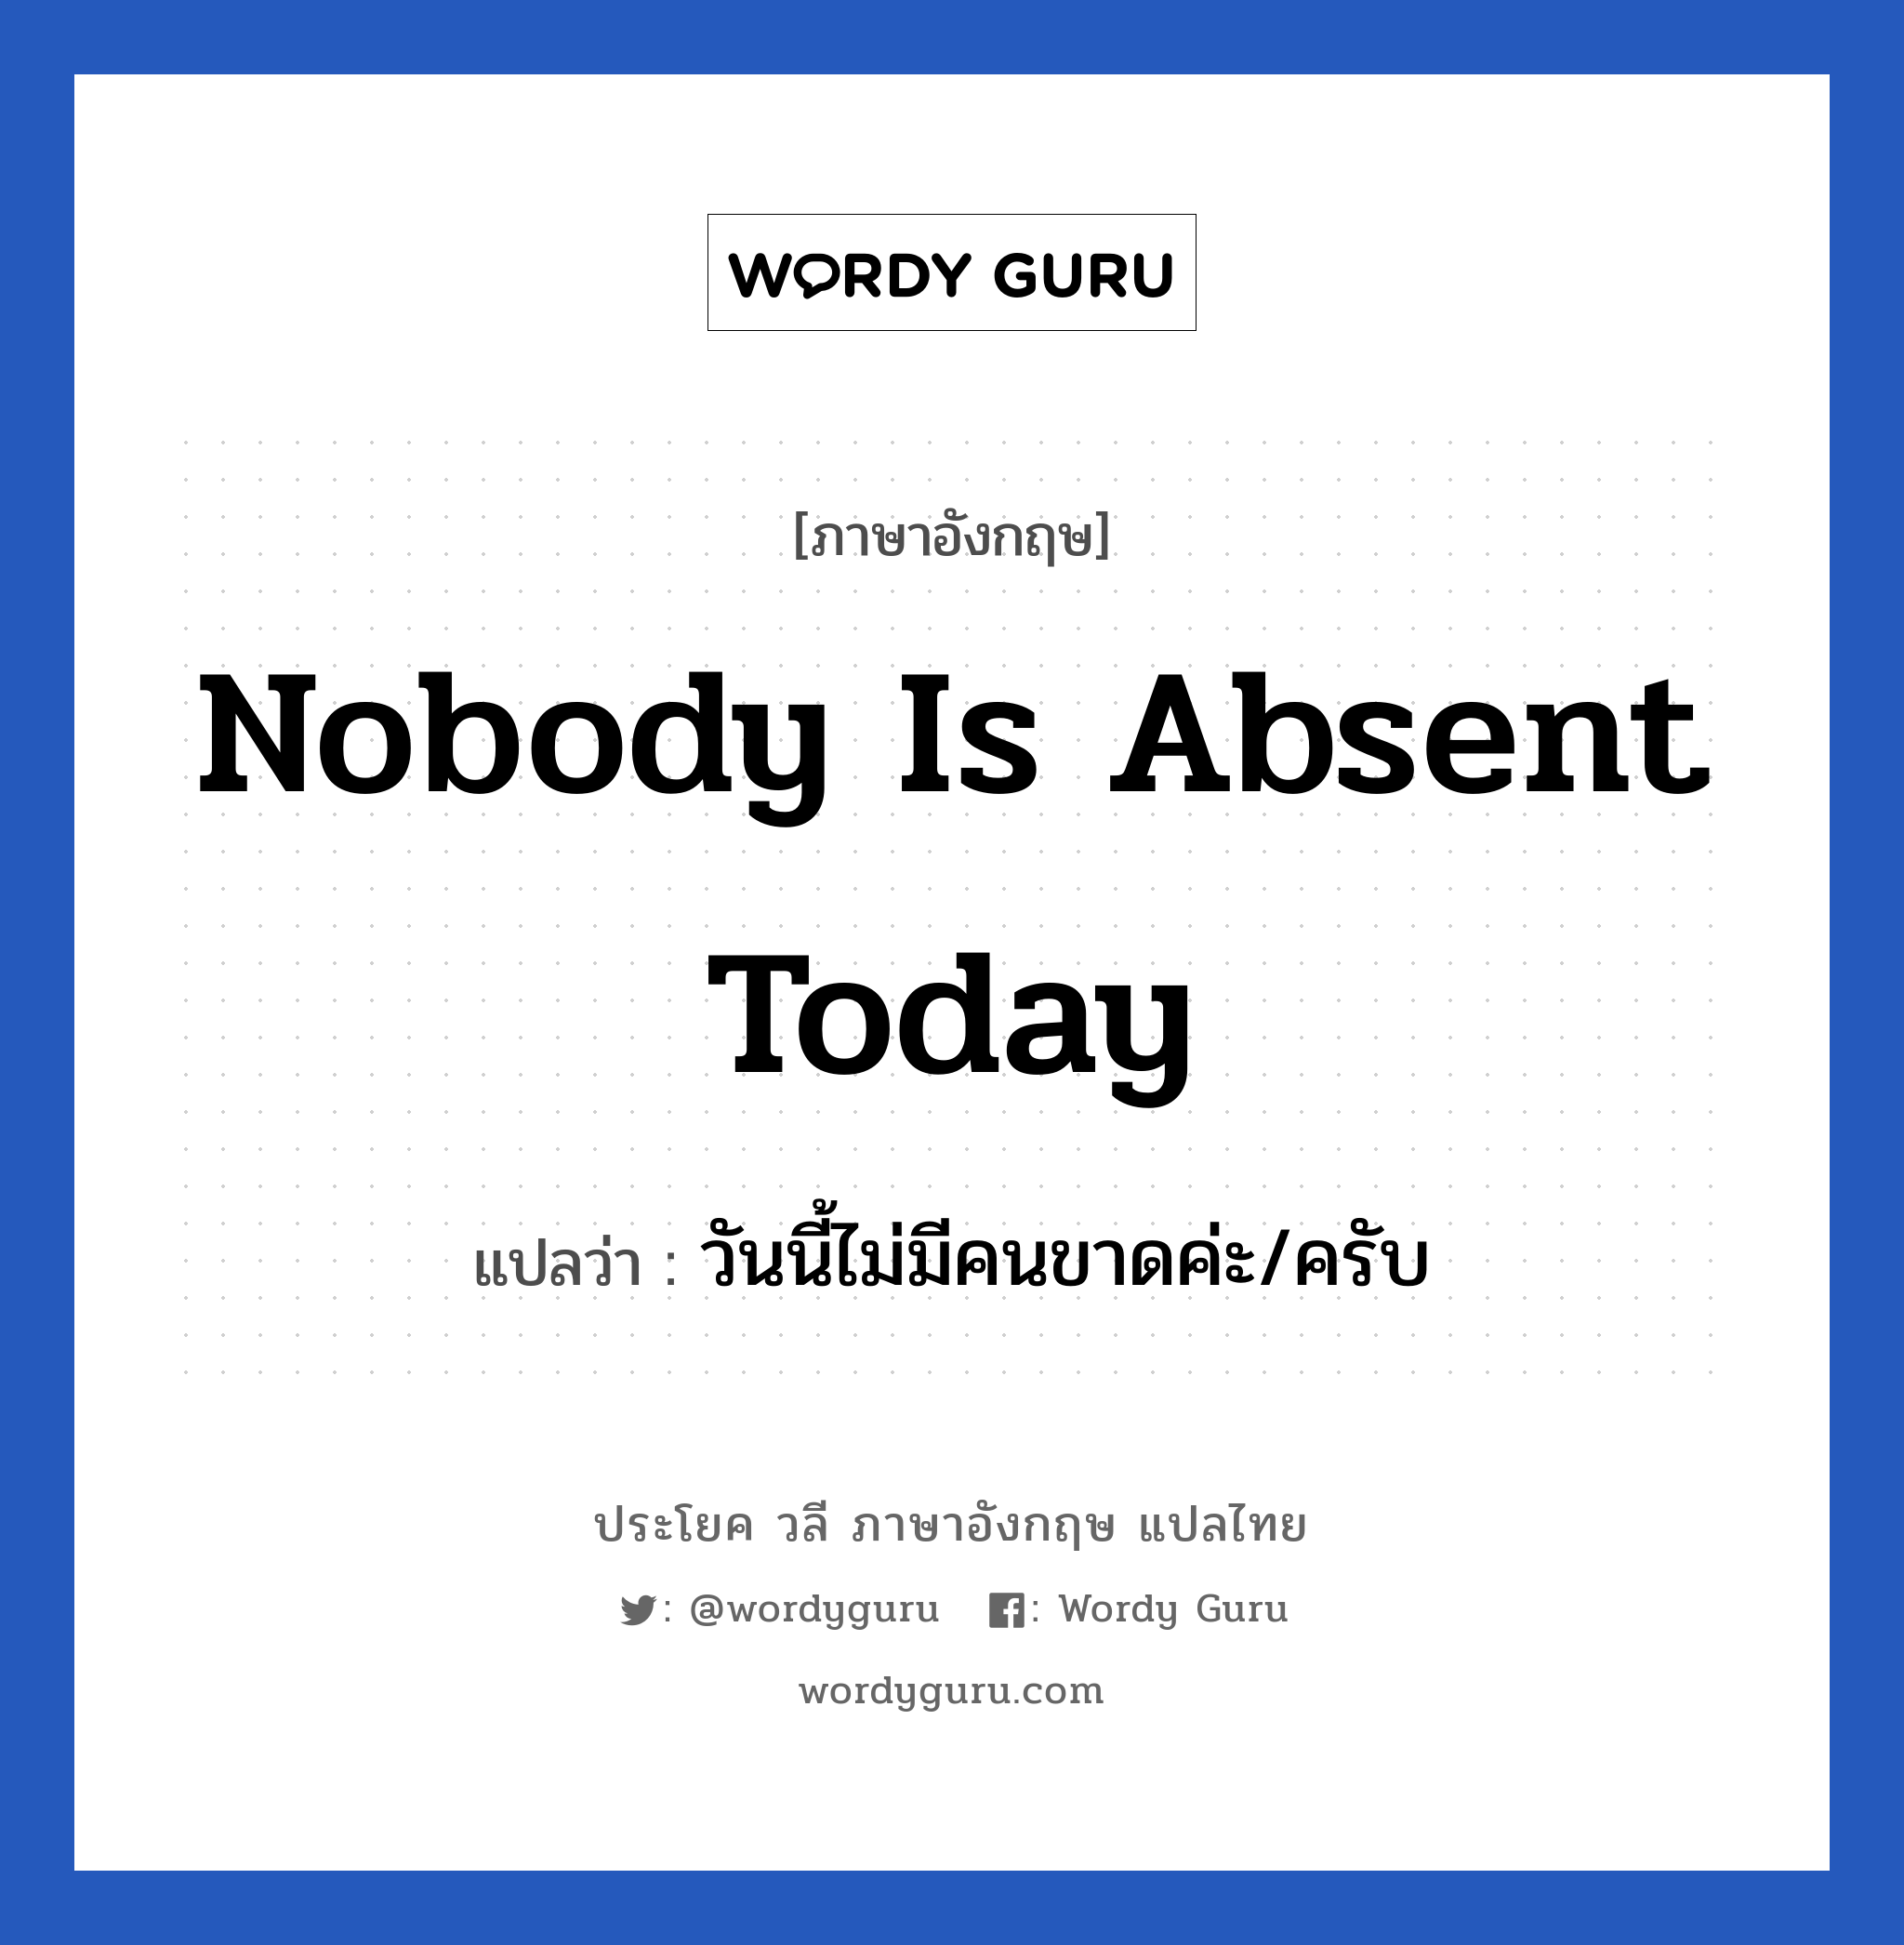 วันนี้ไม่มีคนขาดค่ะ/ครับ ภาษาอังกฤษ?, วลีภาษาอังกฤษ วันนี้ไม่มีคนขาดค่ะ/ครับ แปลว่า Nobody is absent today